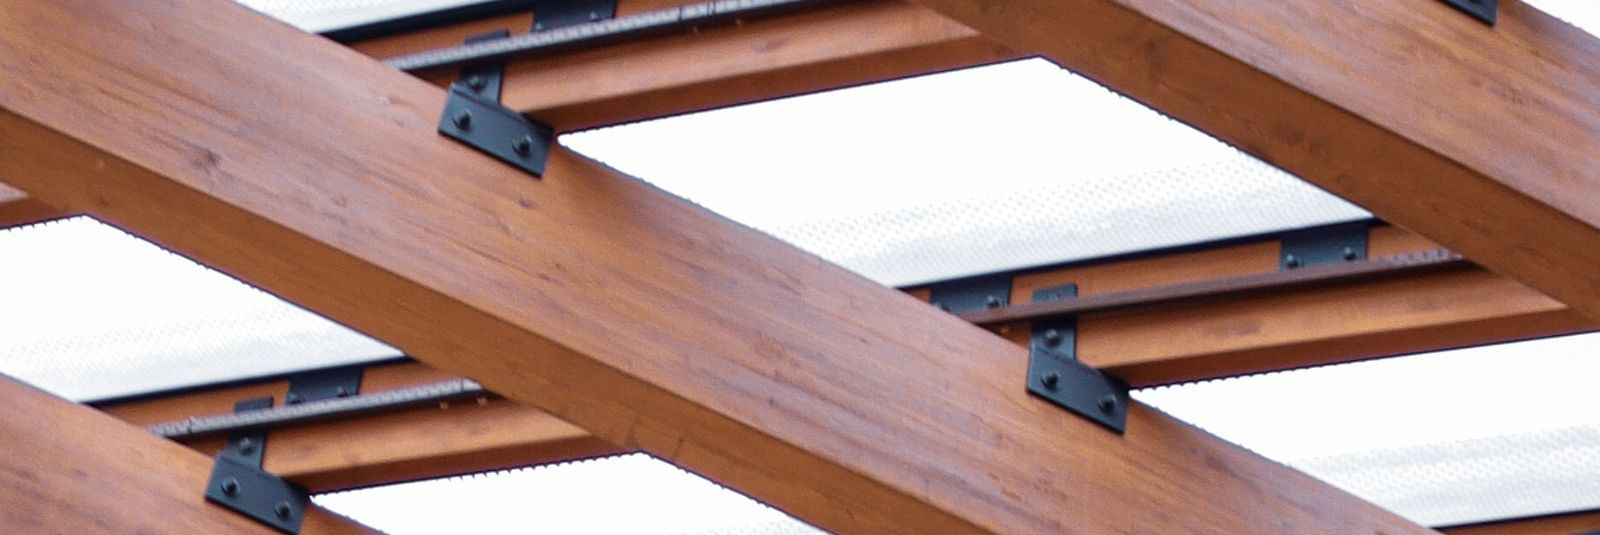 Kui otsite usaldusväärset partnerit puidu- ja metallkonstruktsioonide montaažitöödeks, siis Vestenmix OÜ on õige valik. Oleme Eesti juhtiv liimpuidu ja CLT mont